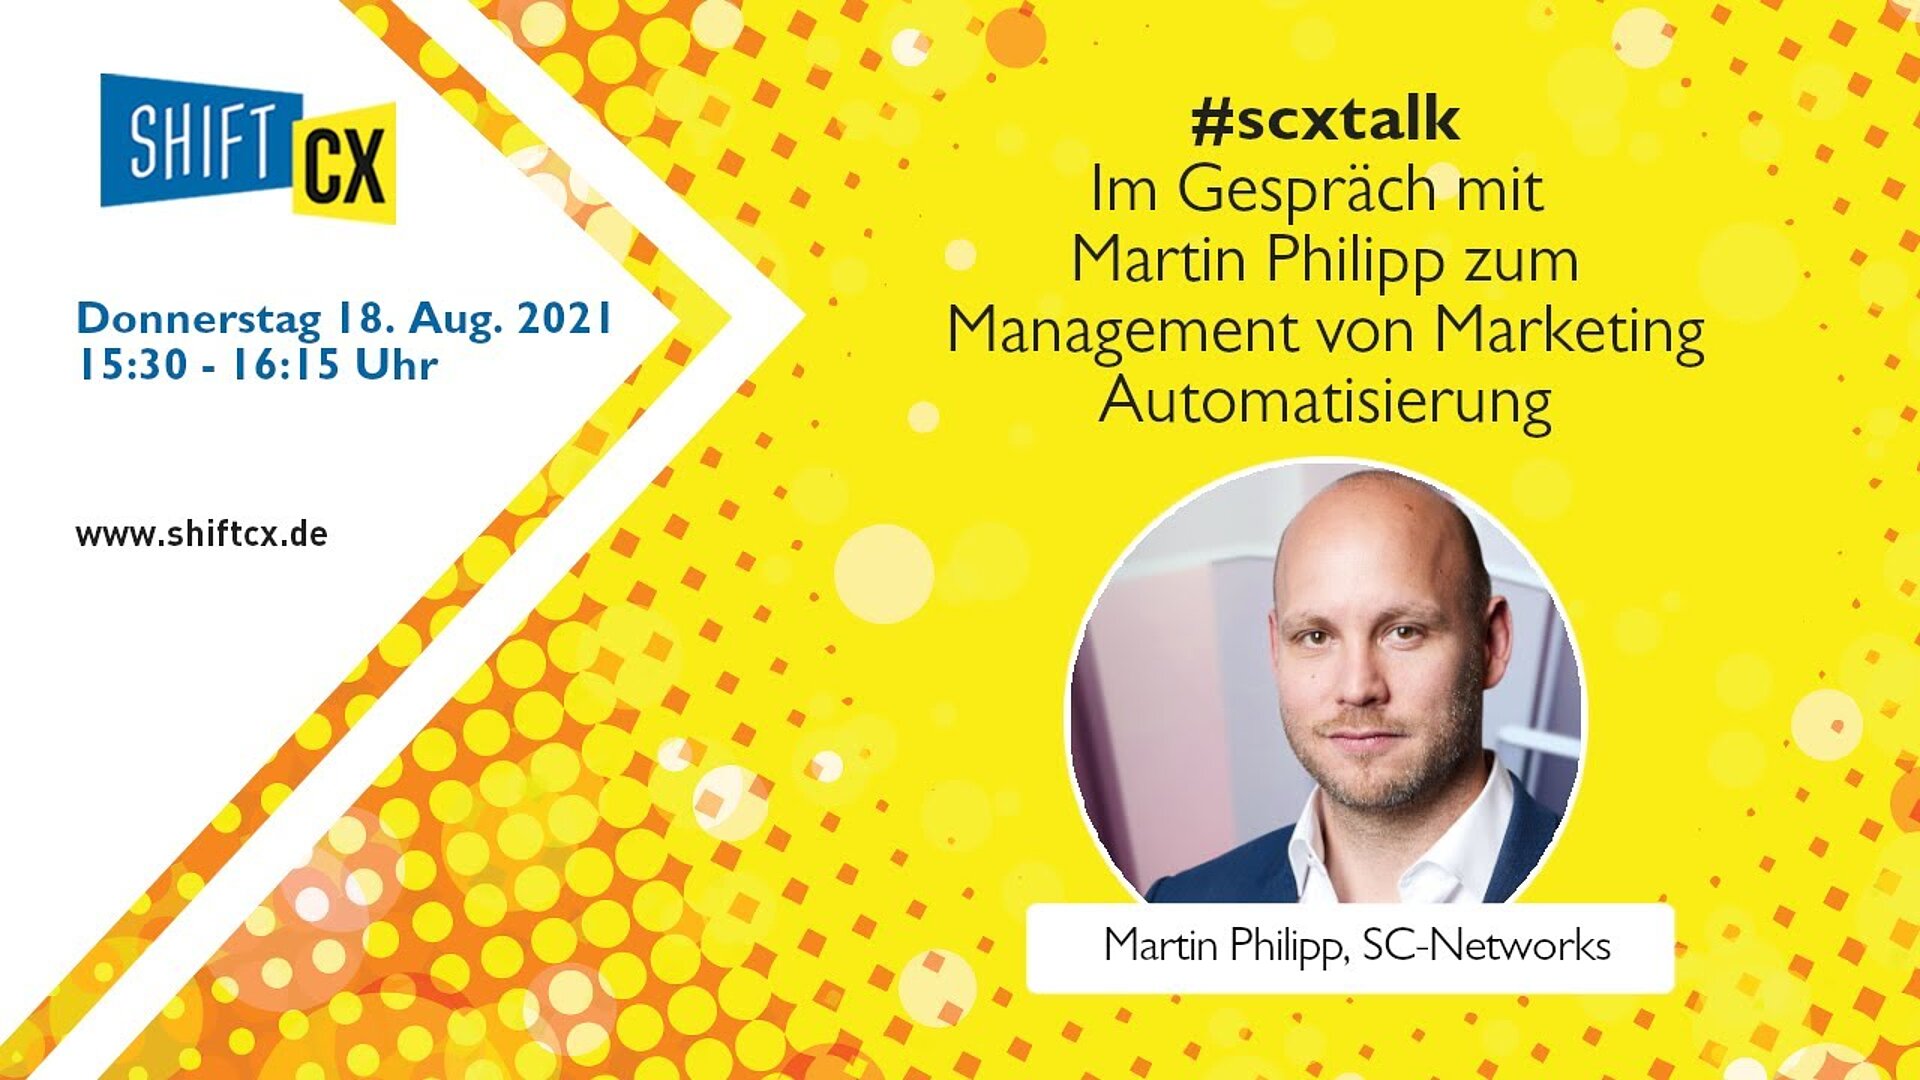 Im Gespräch mit Martin Philipp zum spielerischen Management der Marketing Automatisierung